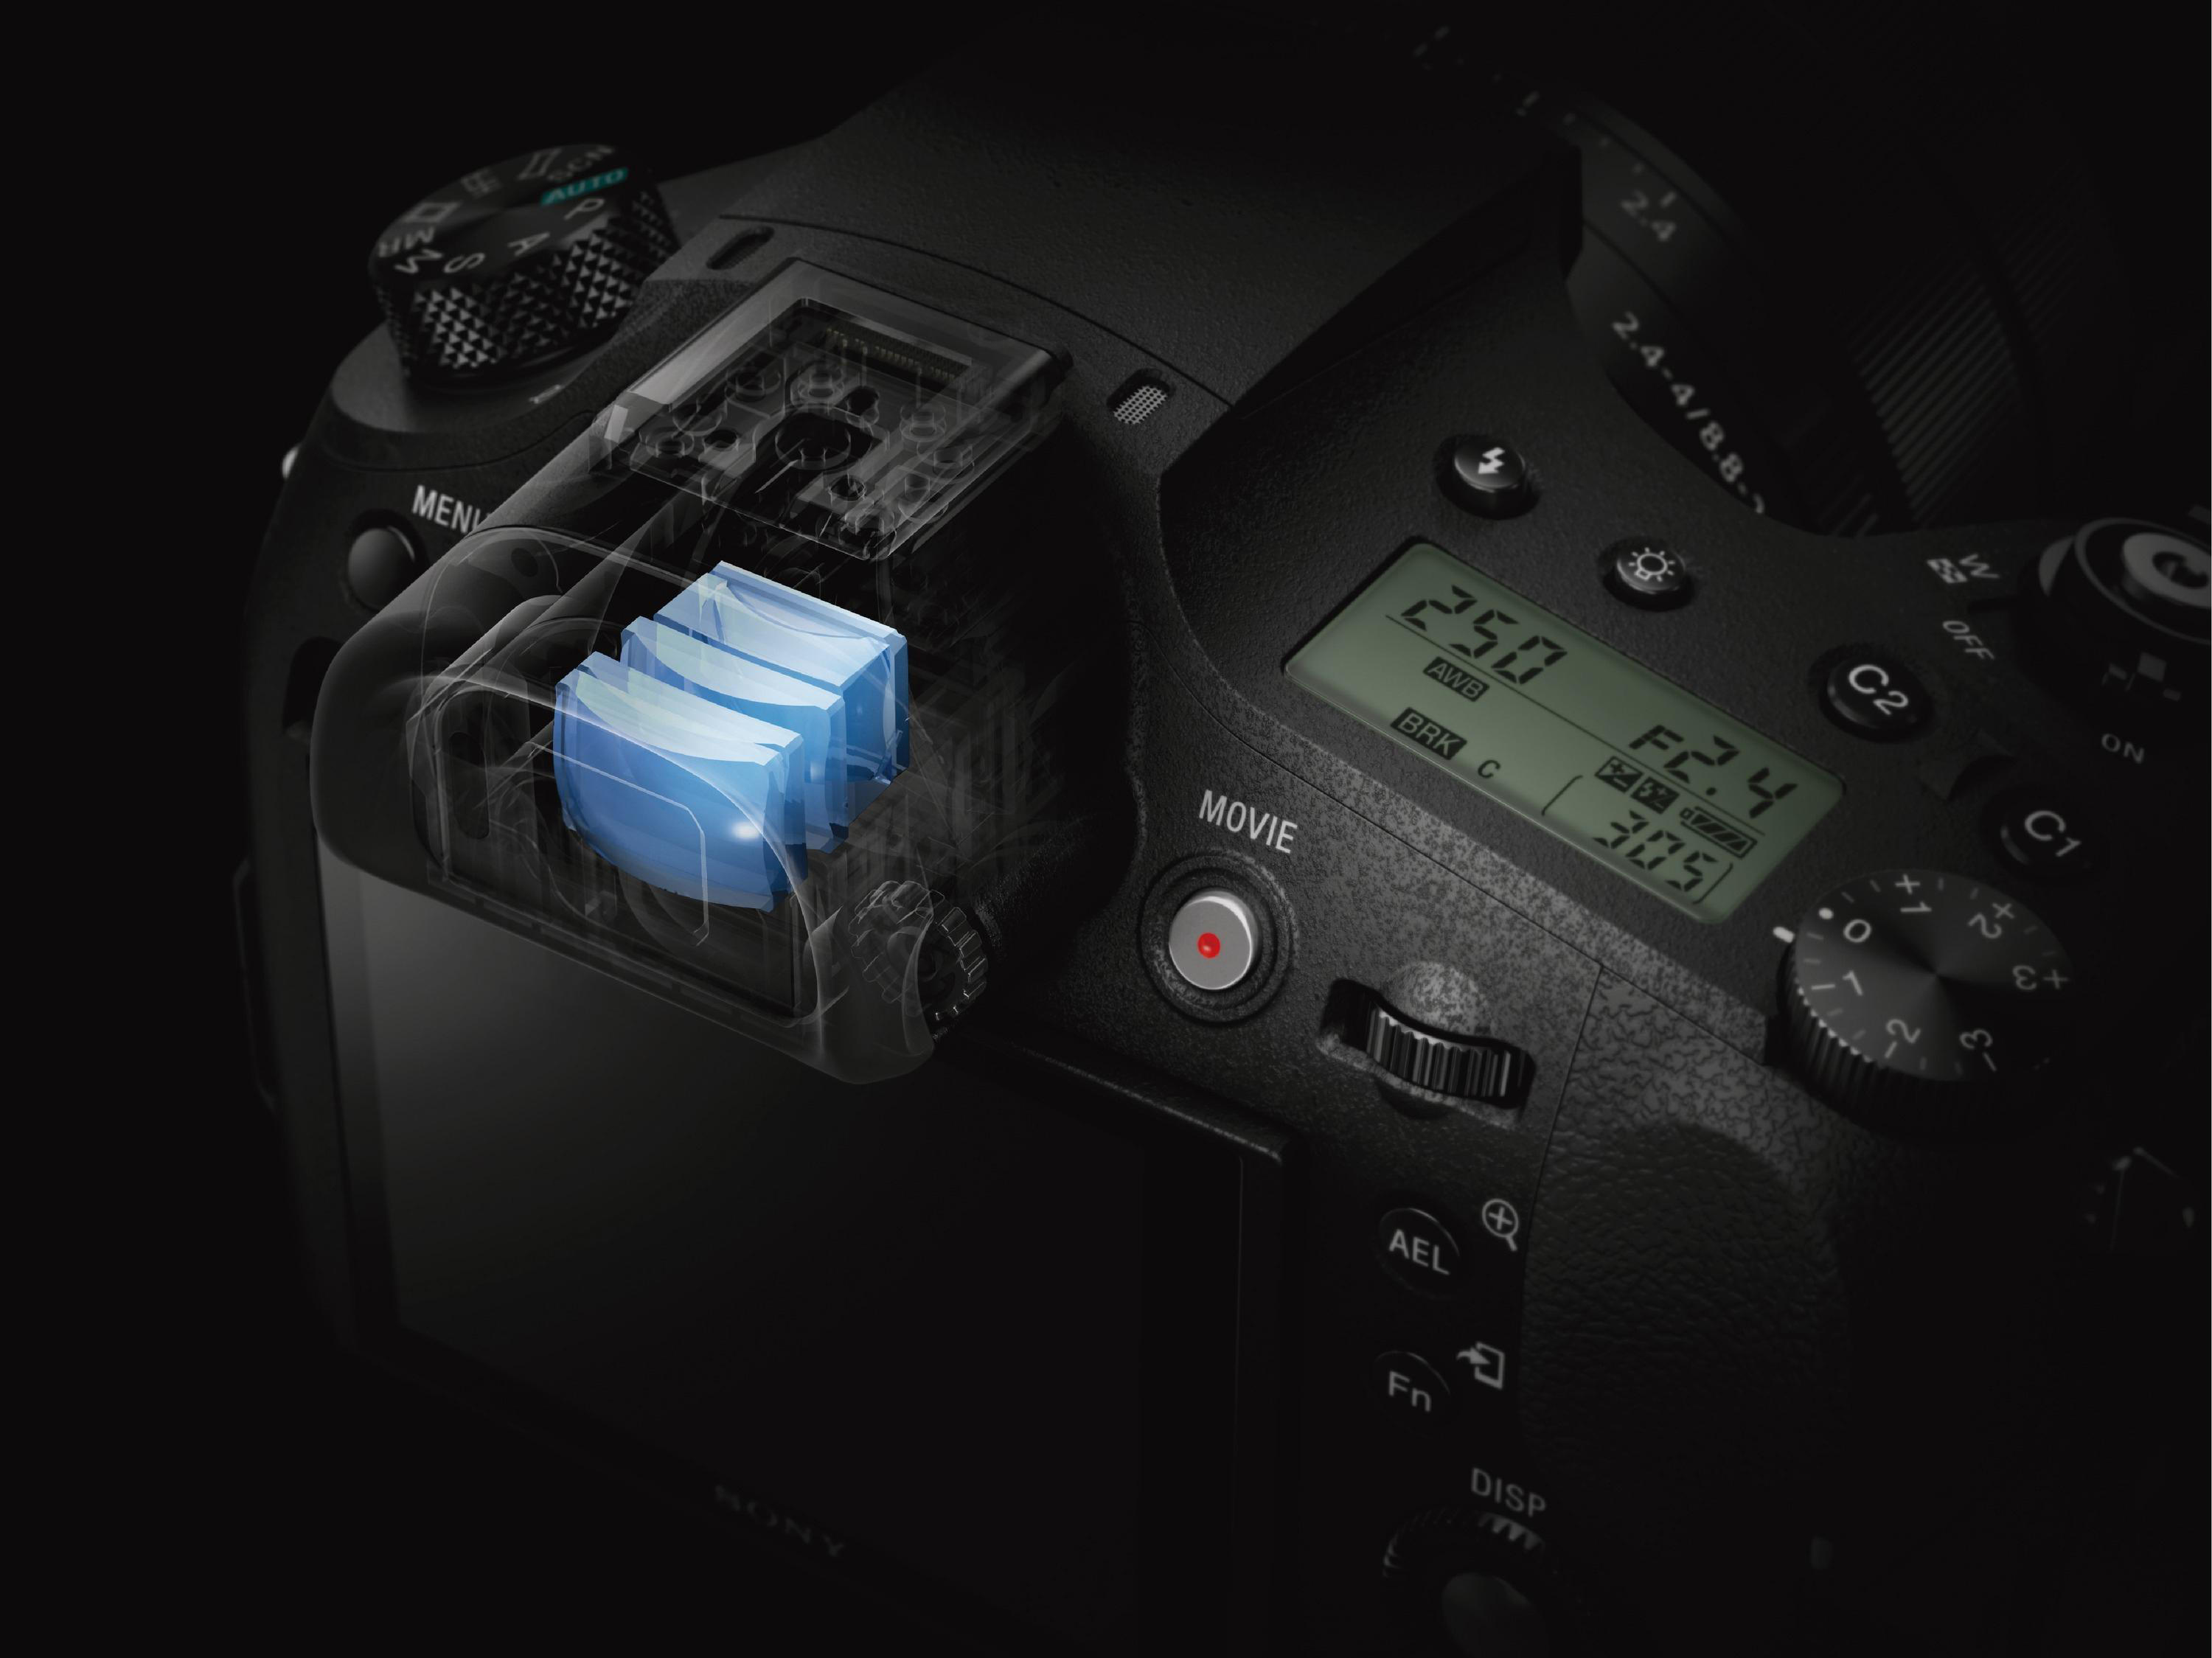 Bridgekamera Zoom, Zeiss SONY opt. Schwarz, Xtra M3 , Fine, DSC-RX10 NFC WLAN TFT-LCD, 25x Cyber-shot